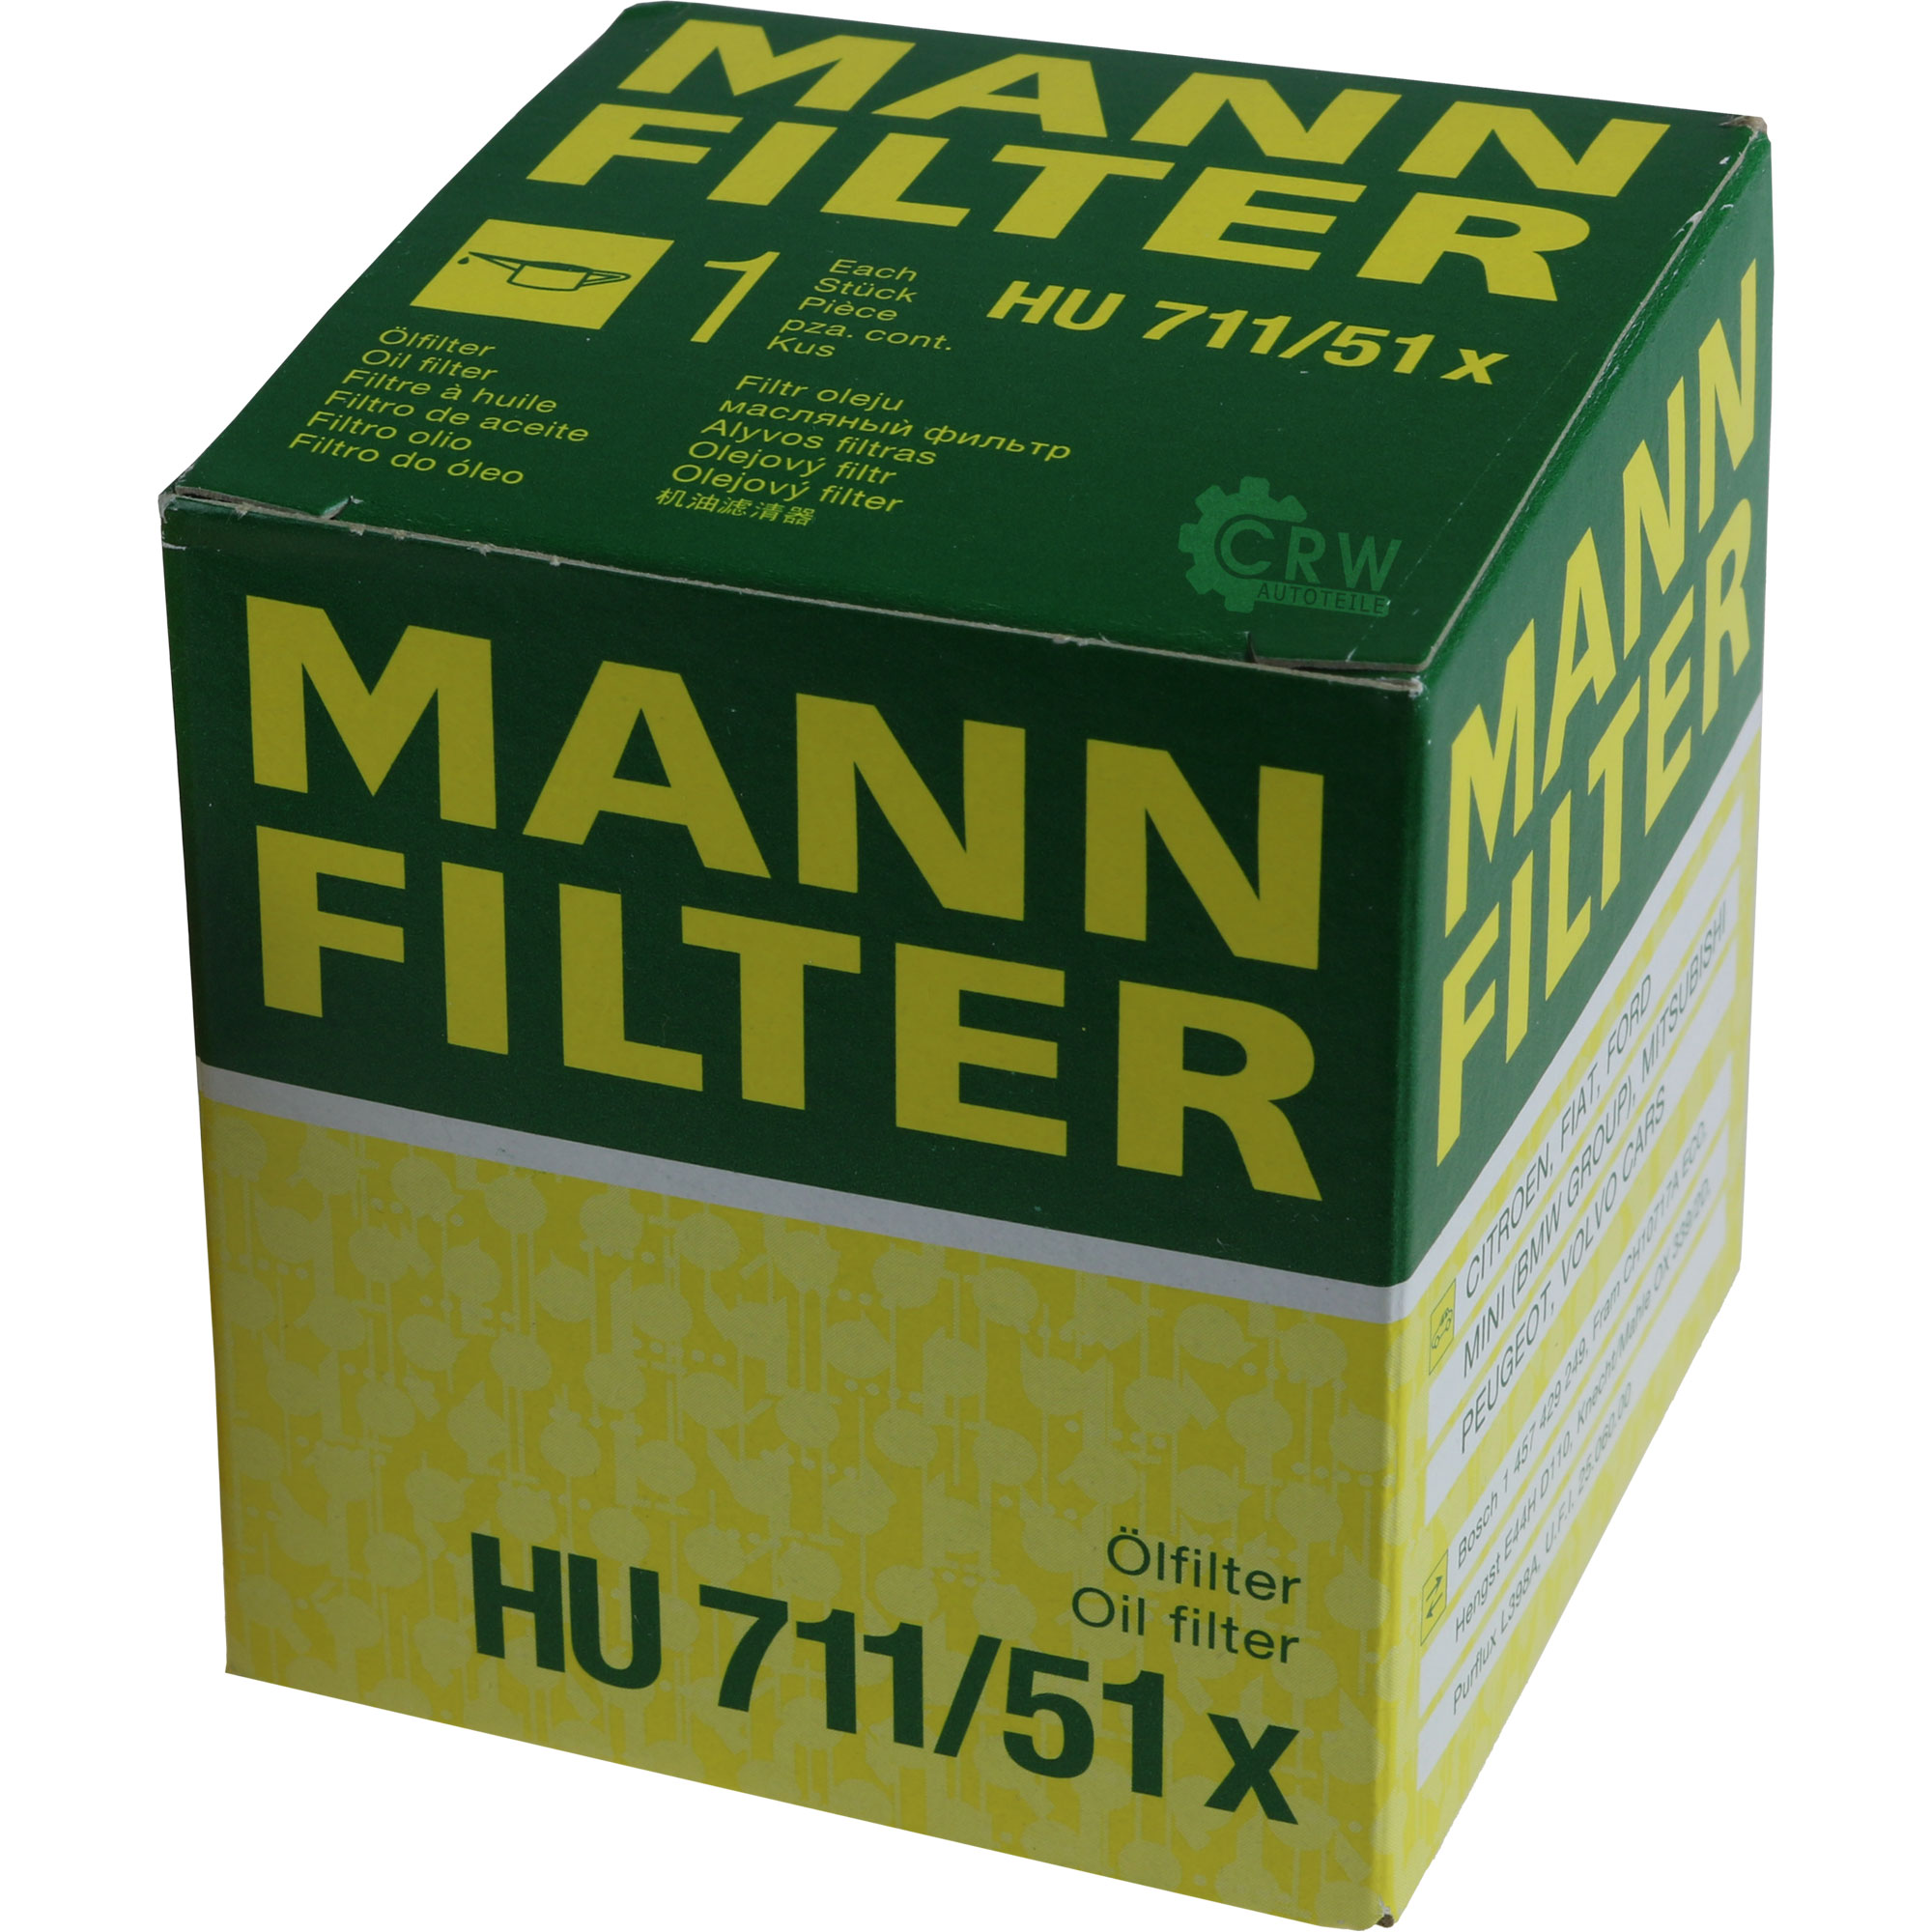 MANN-FILTER Ölfilter HU 711/51 x Oil Filter